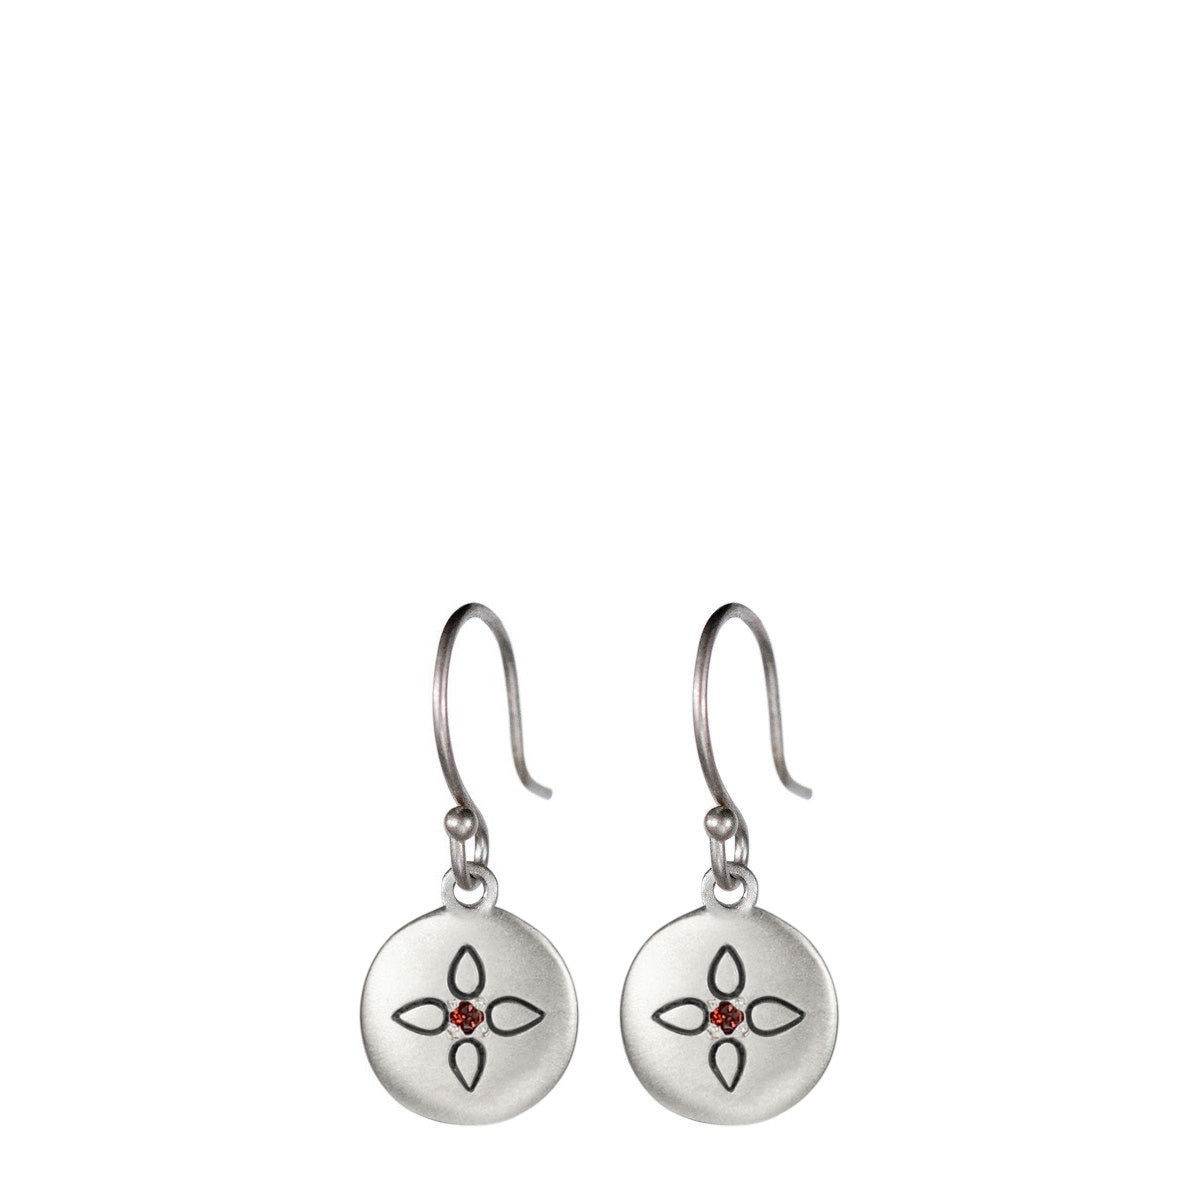 Sterling Silver Lotus Mandala Earrings with Garnets